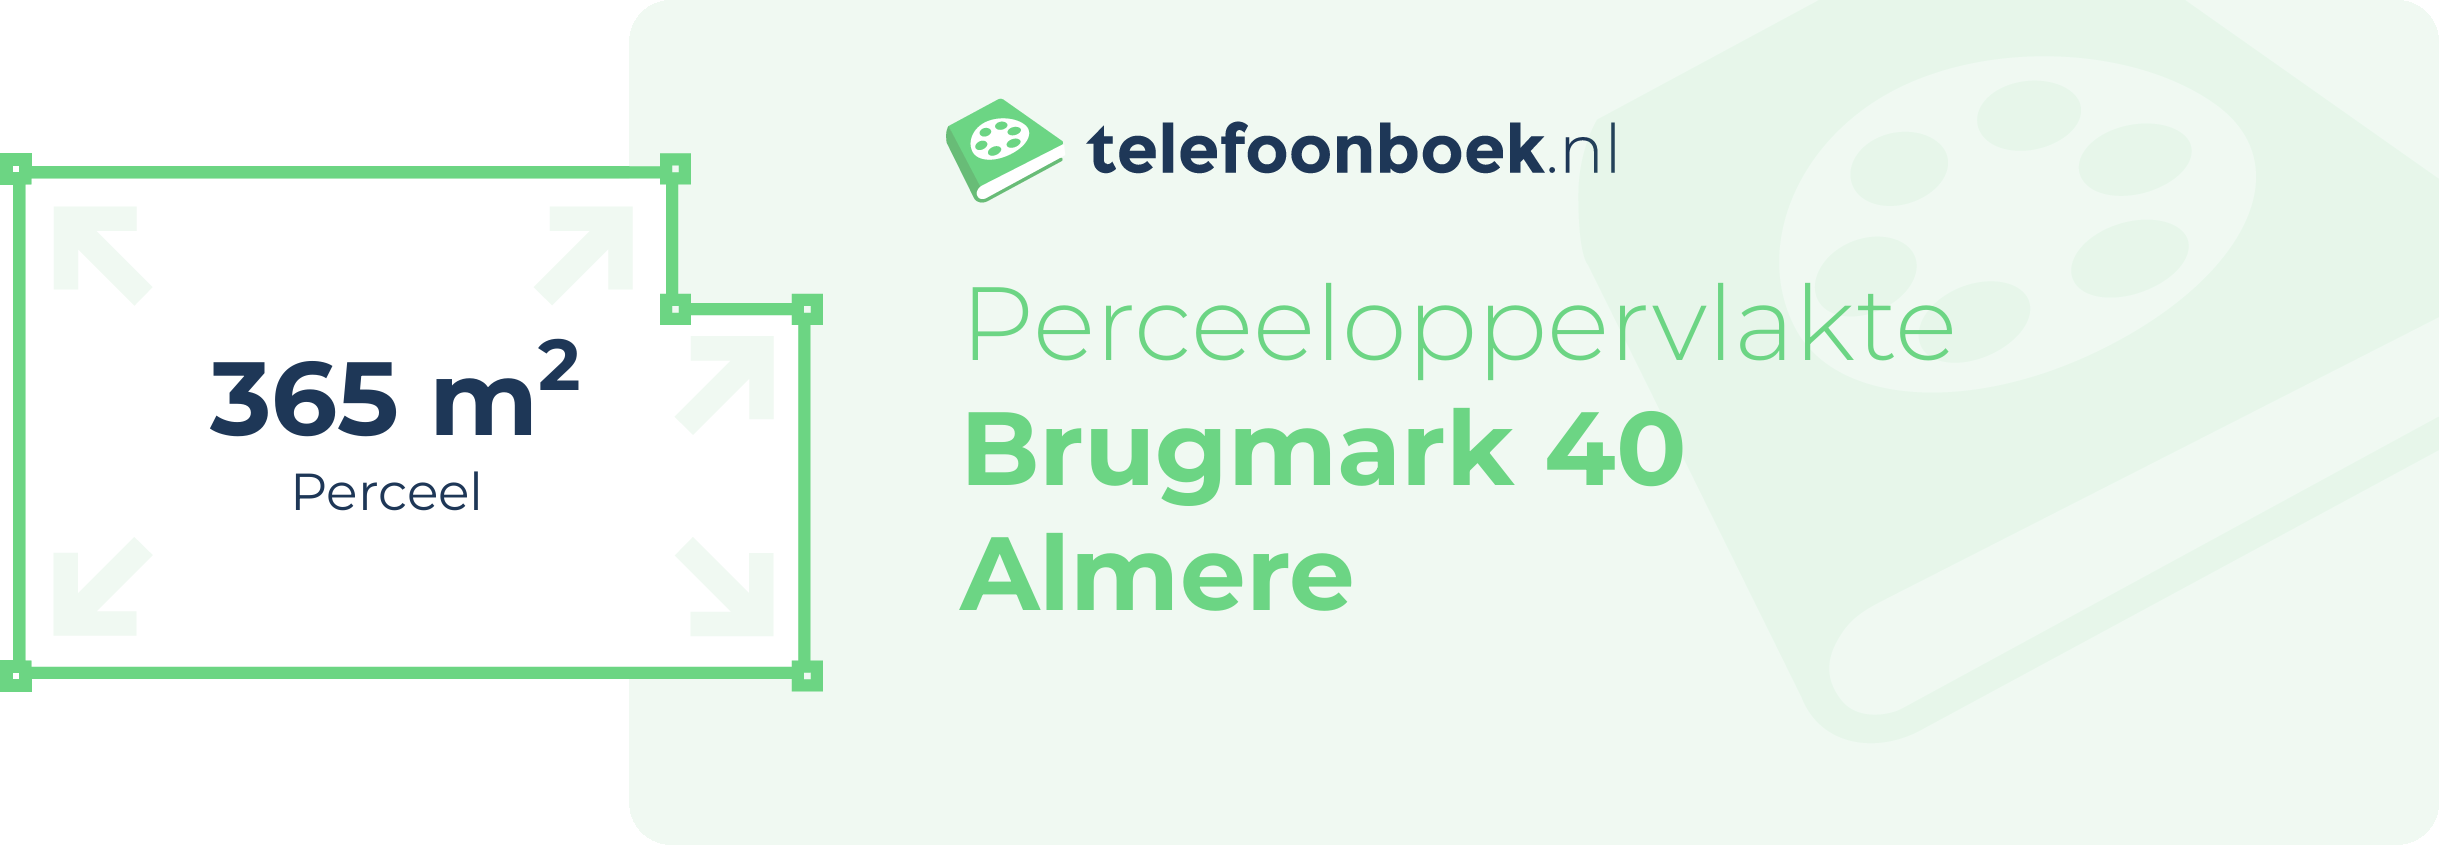 Perceeloppervlakte Brugmark 40 Almere